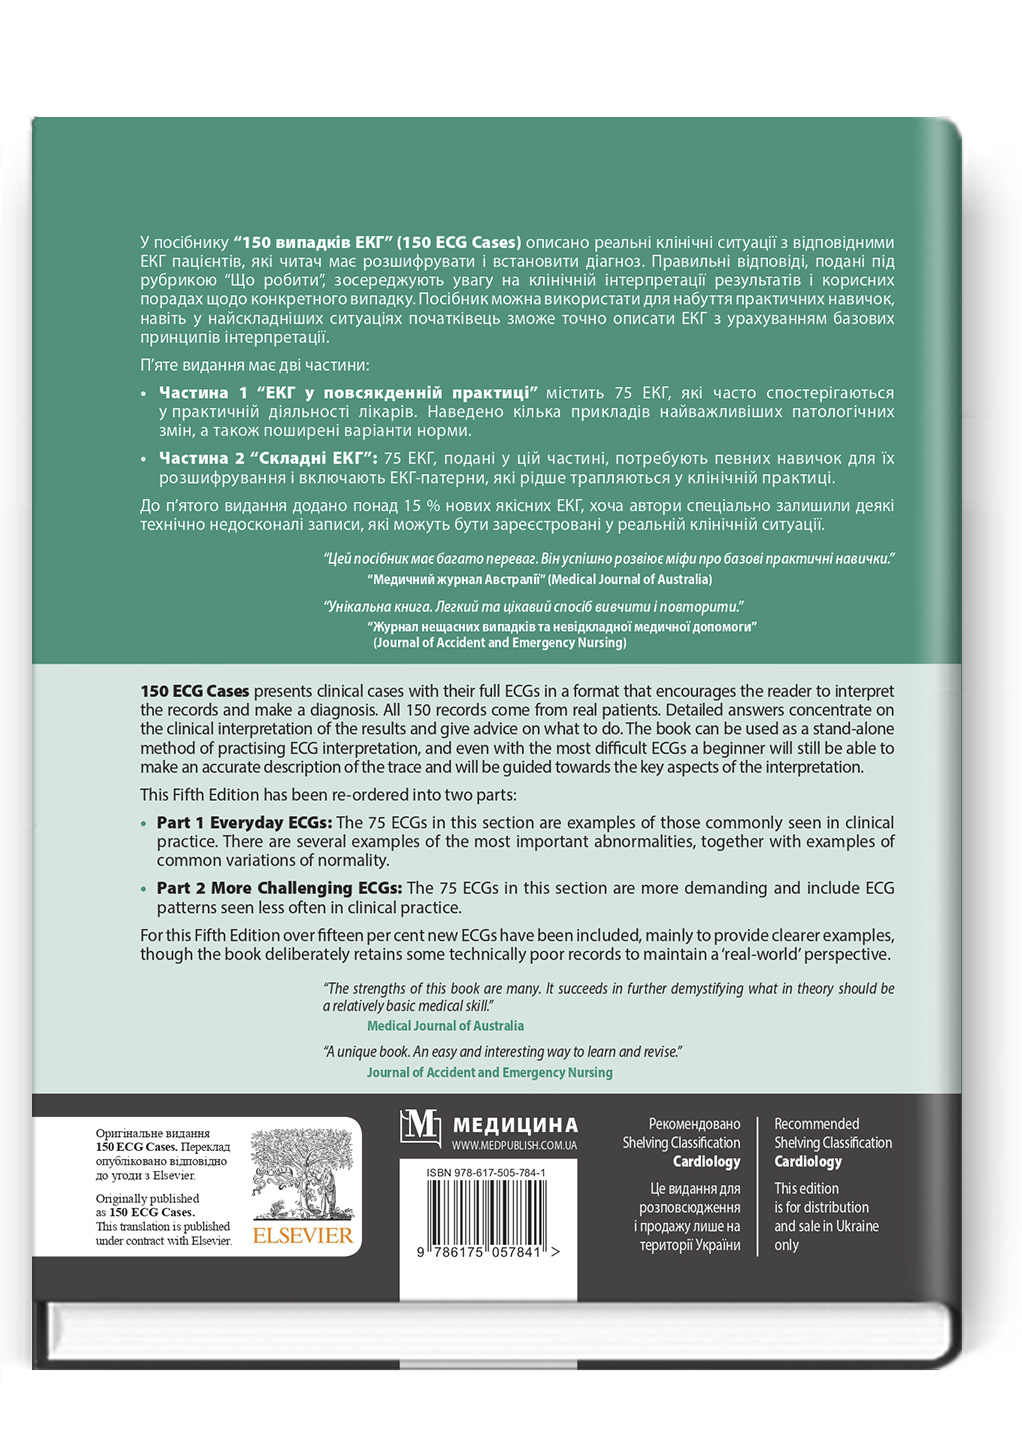 150 випадків ЕКГ: 5-е видання. Автор — Джон Хемптон, Девід Едлем, Джоанна Хемптон, Нестор Середюк. 